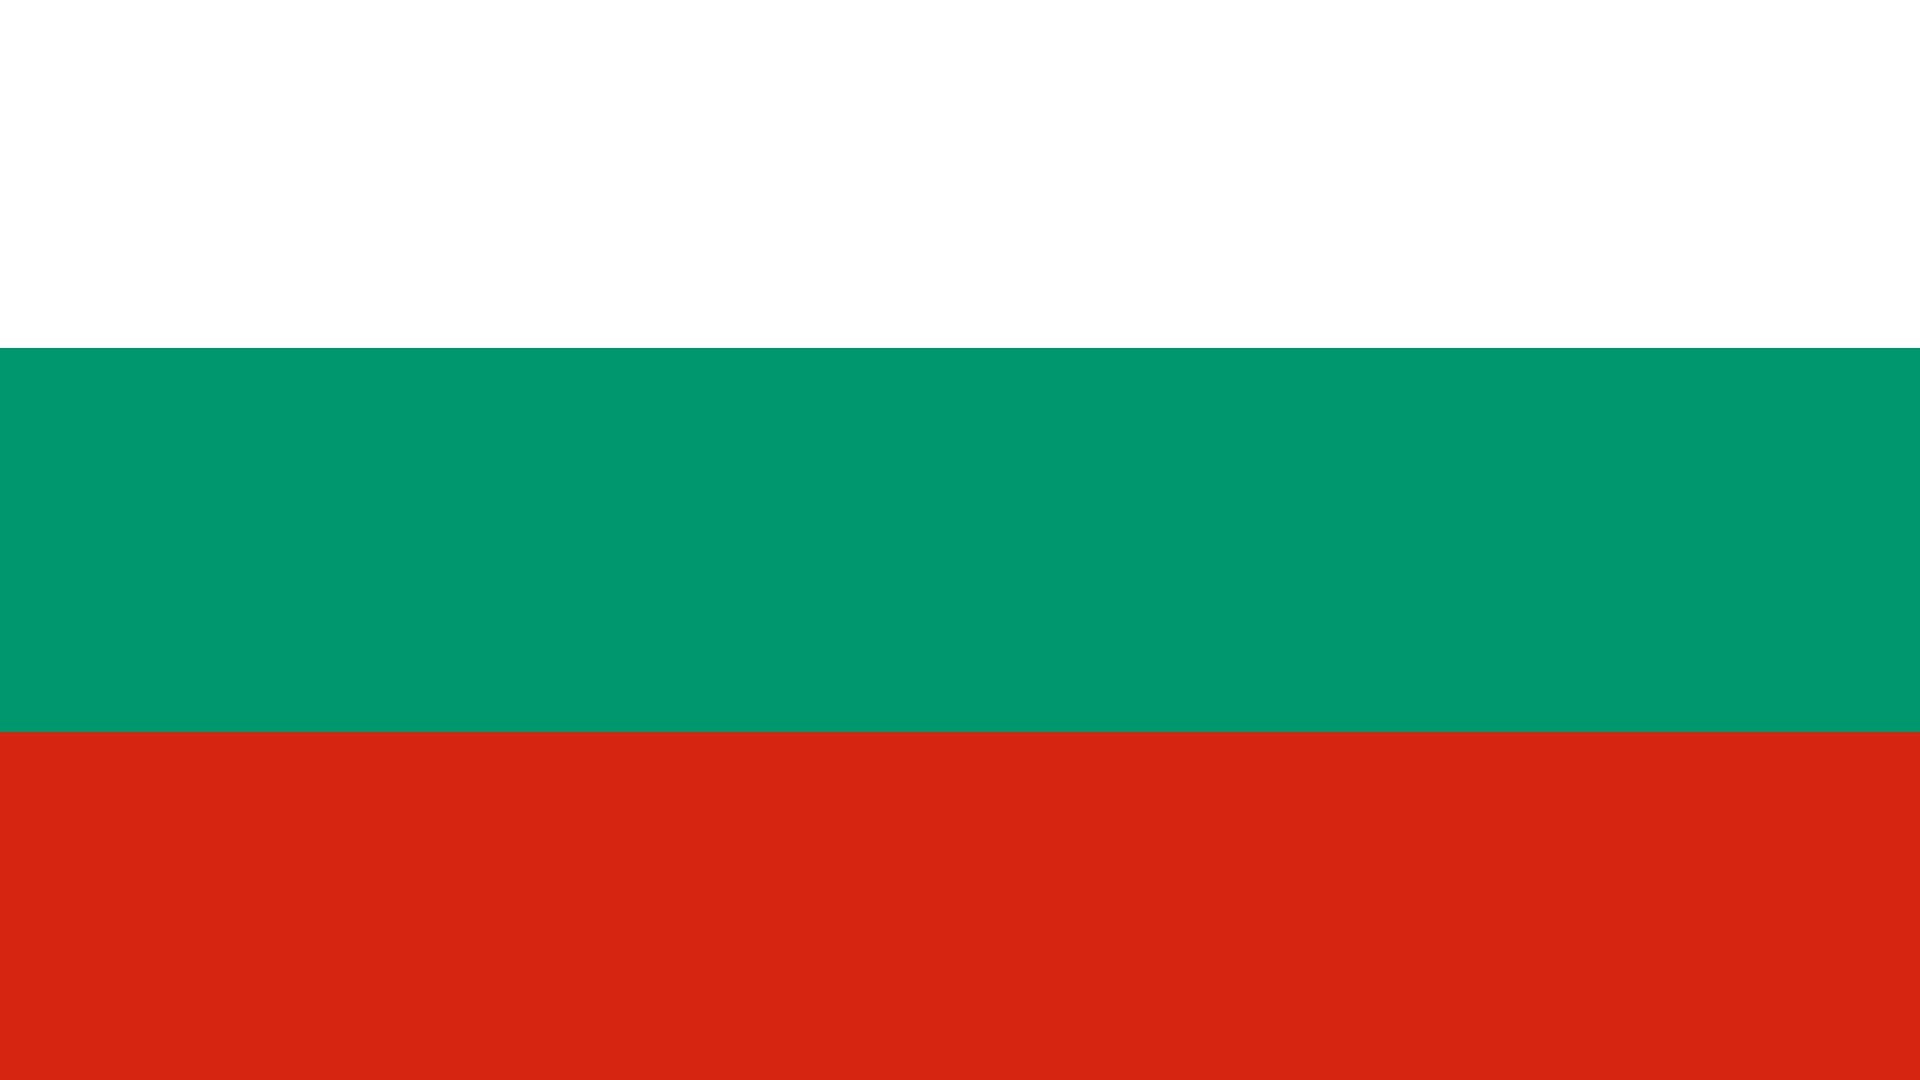 A bandeira da Bulgária consiste de três listas horizontais iguais nas cores branca (no topo), verde e vermelha.